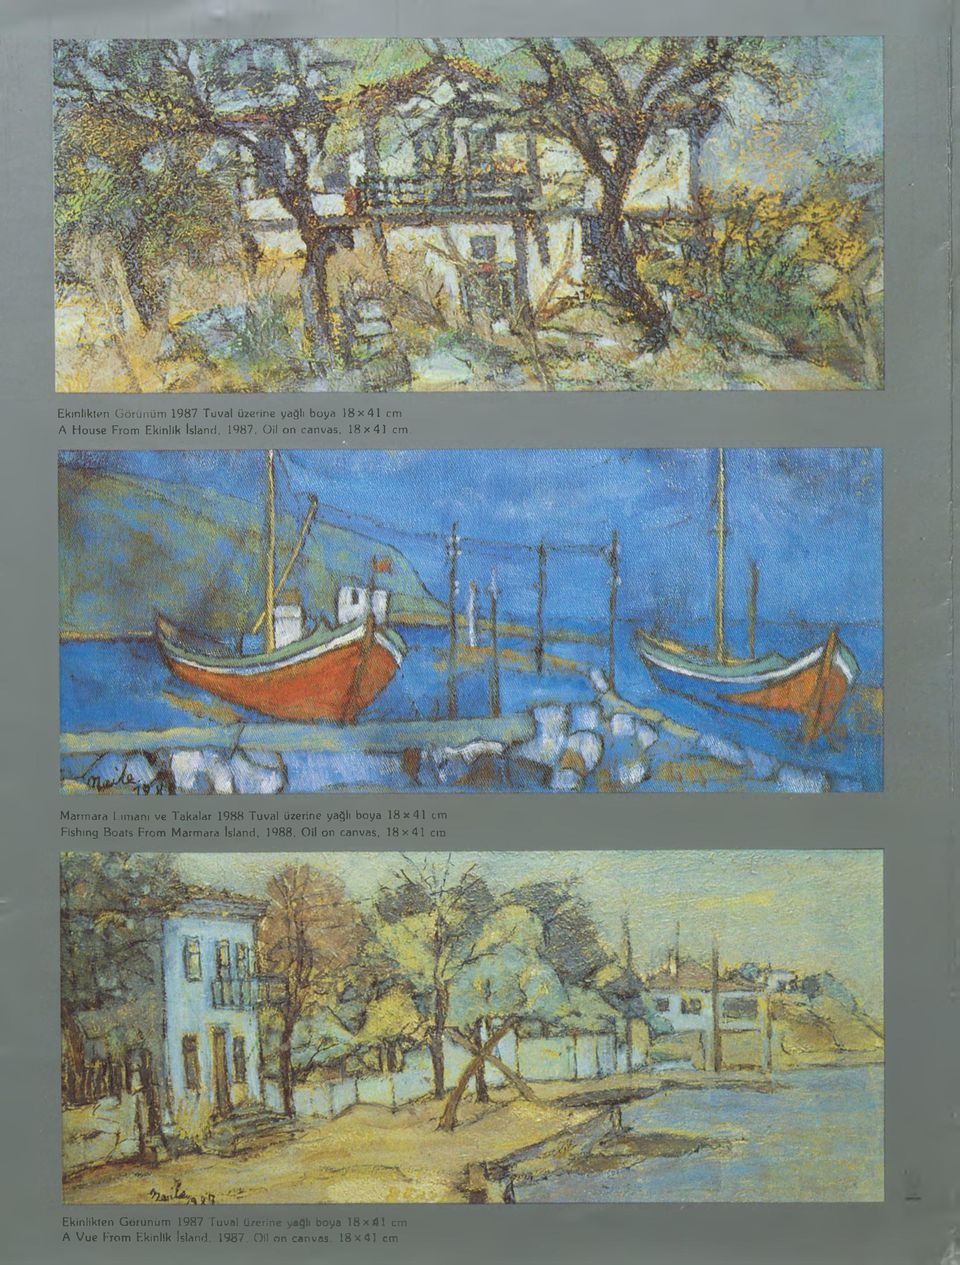 Marmara Limanı ve Takalar 1988 Tuval üzerine yağlı boya 1 8 x 4 1 cm.